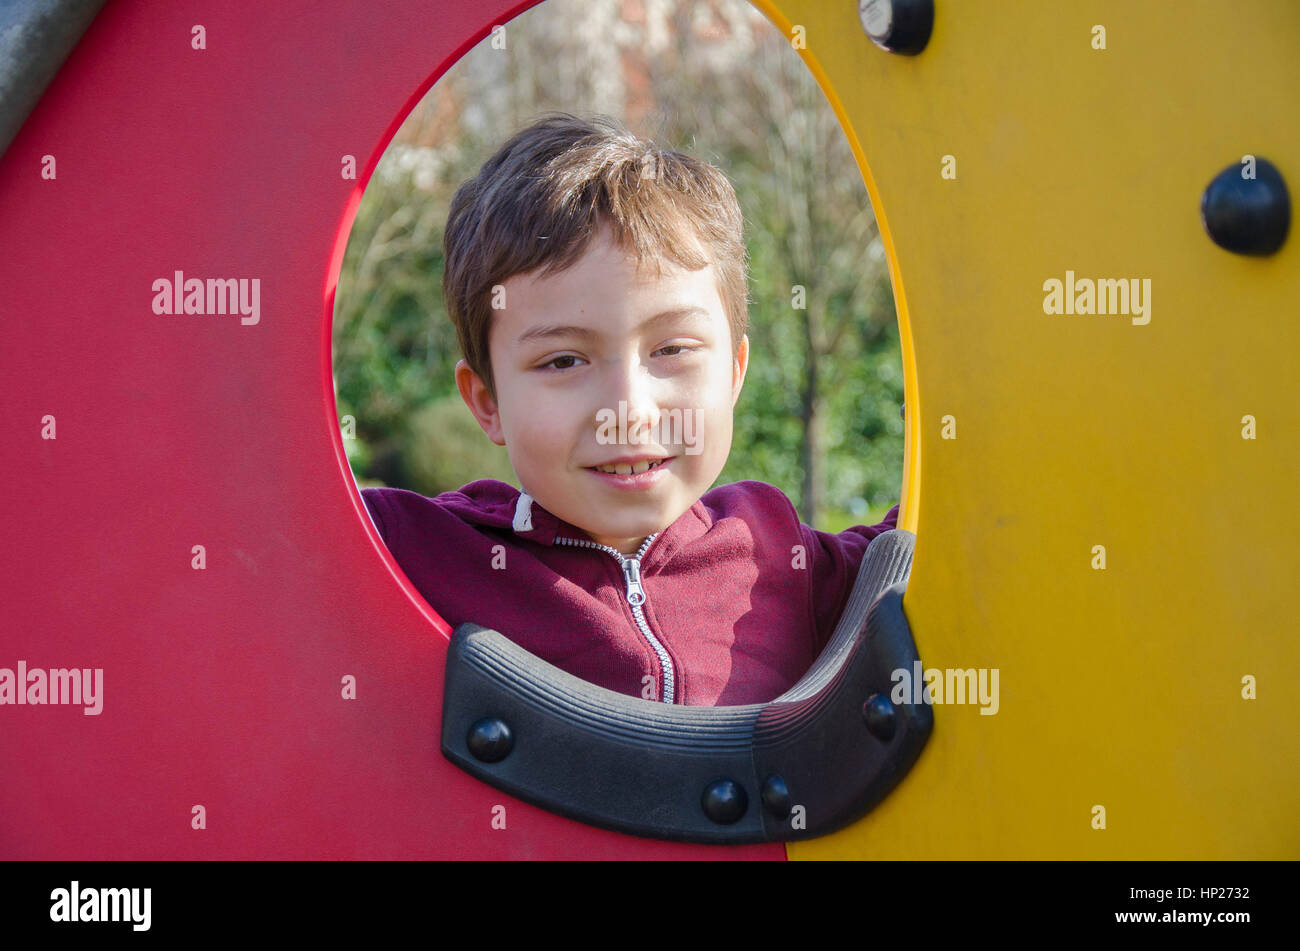 Un jeune garçon pose pour une photo à travers un hublot dans une escalade dans une aire de jeux pour enfants. Banque D'Images